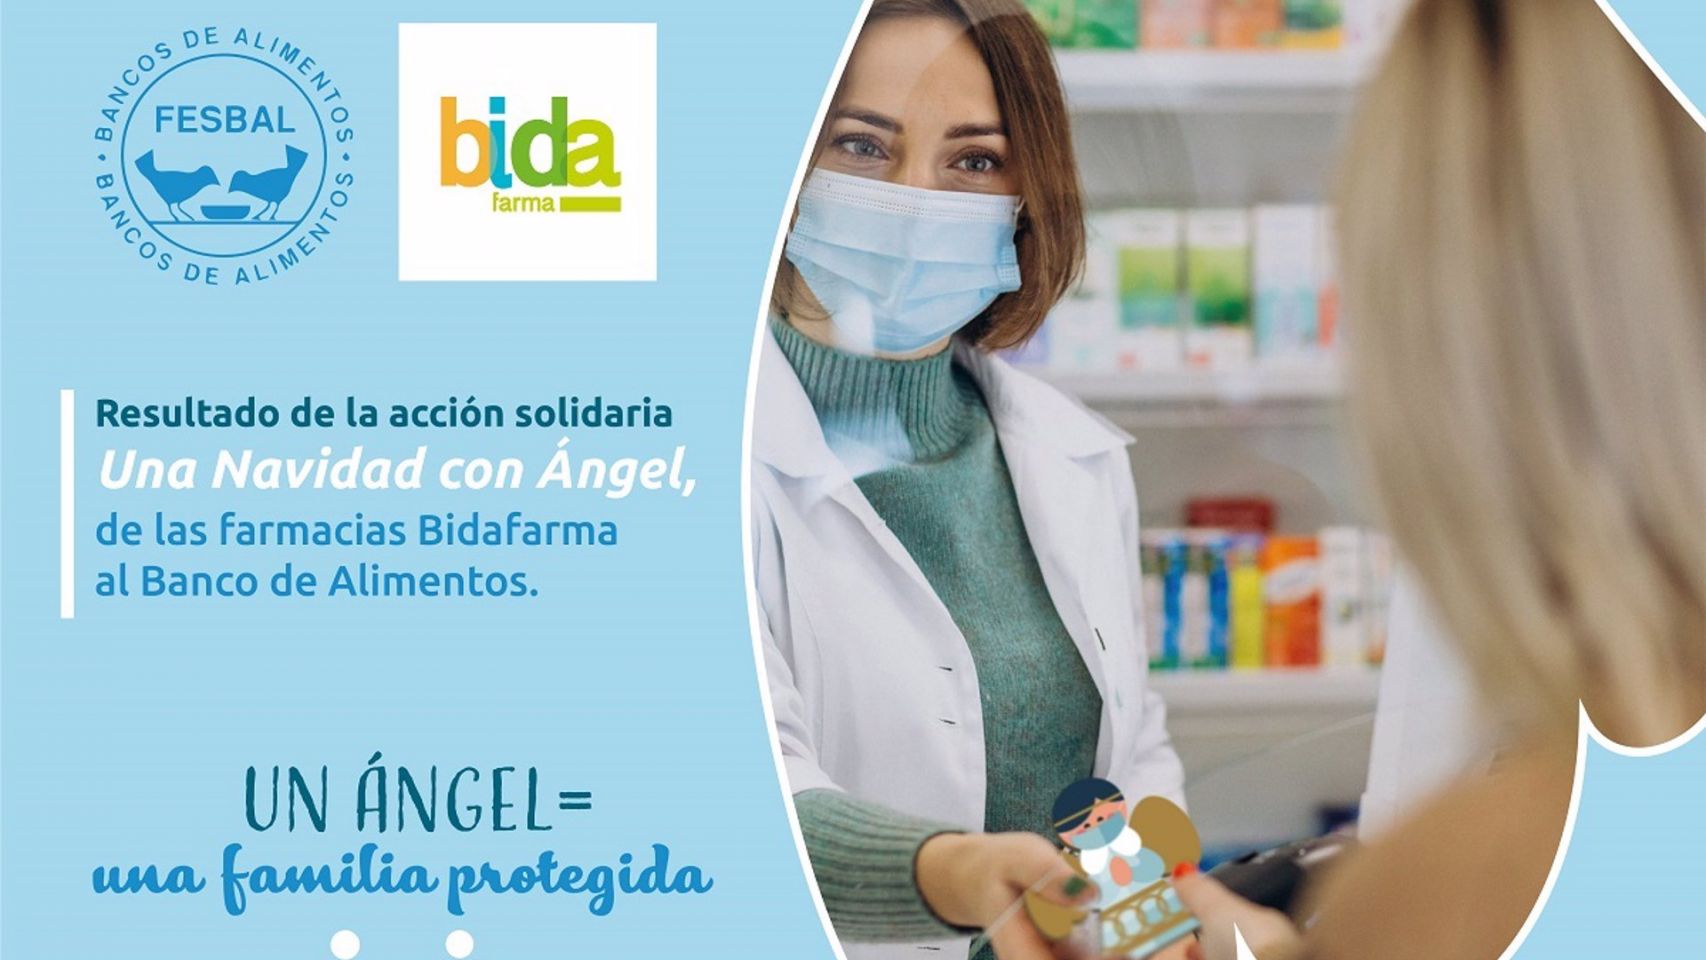 Campaña de las farmacias gallegas para recaudar fondos para los Bancos de Alimentos.